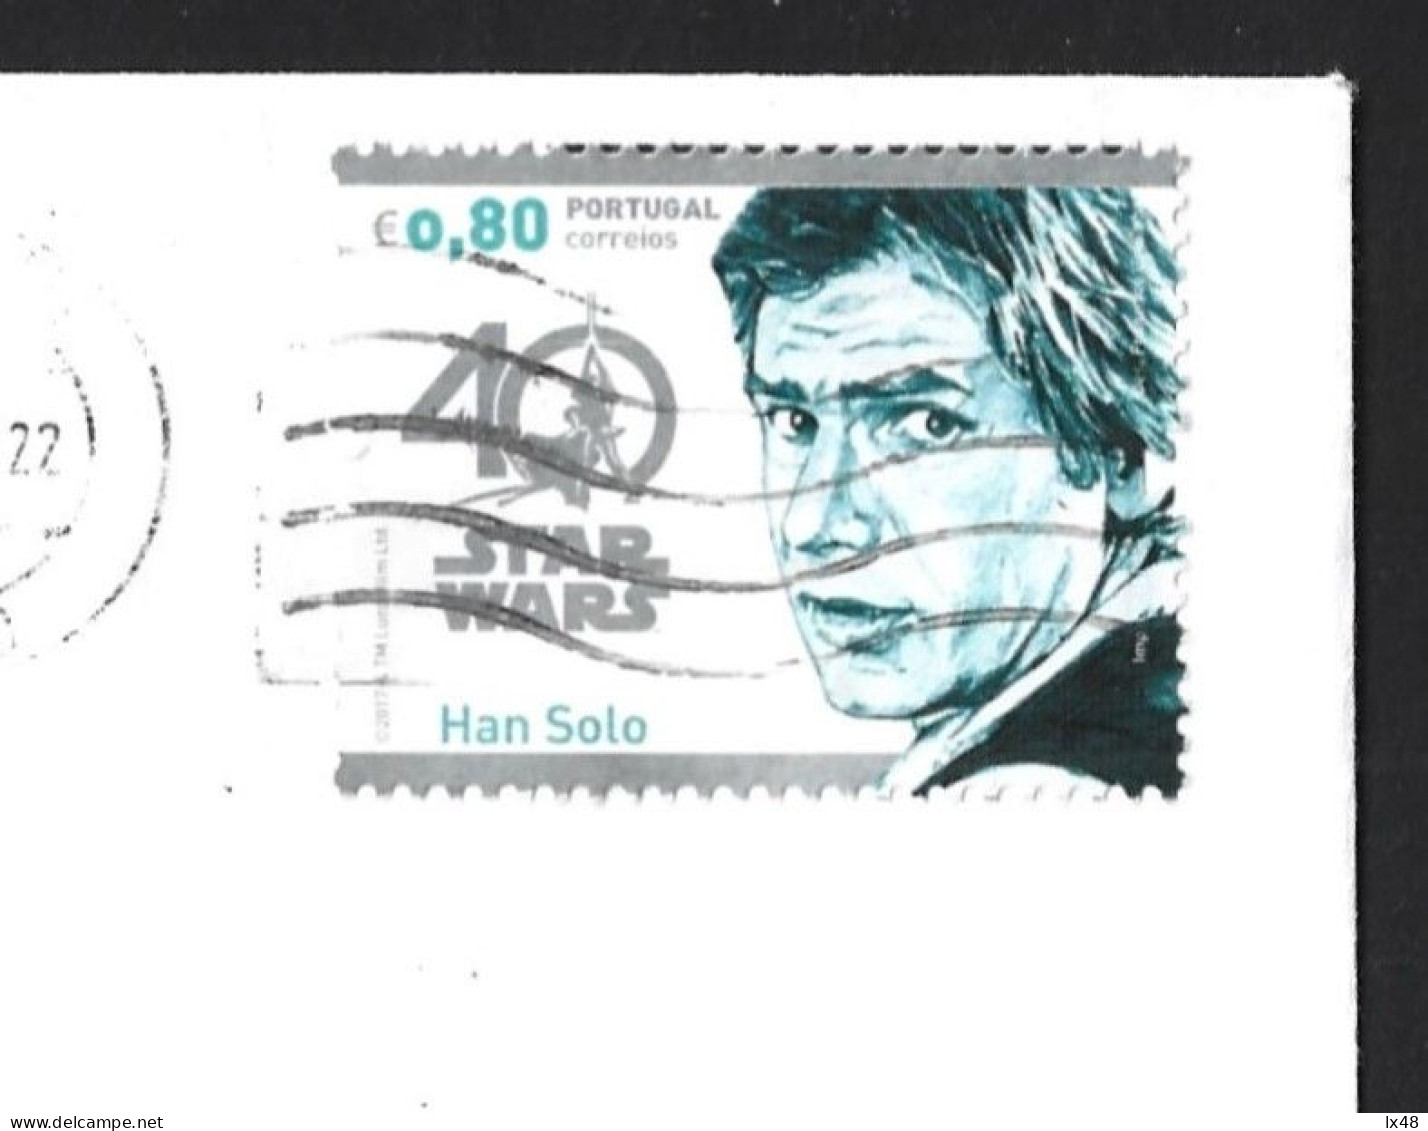 Urgent Letter Stamp 40 Years Star Wars. Han Solo. Film. Dringlicher Briefstempel 40 Jahre Star Wars. Han Solo. Film. - Cinéma